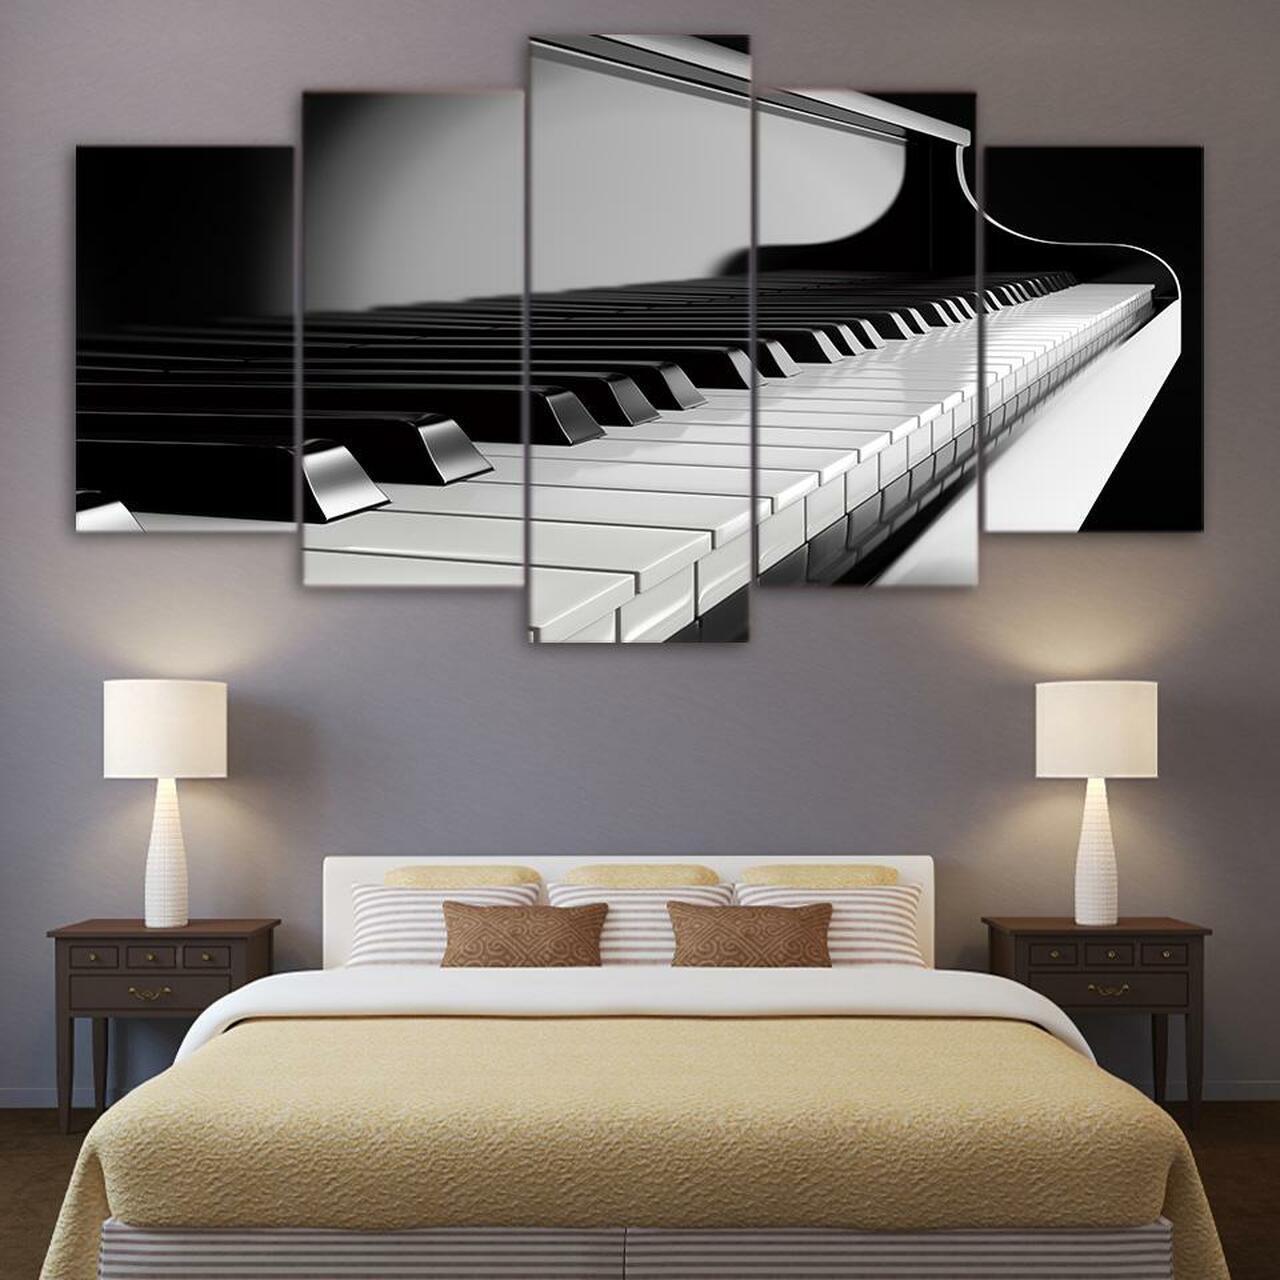 keys of piano 5 pices peinture sur toile impression sur toile toile art pour la dcoration intrieure3c1st